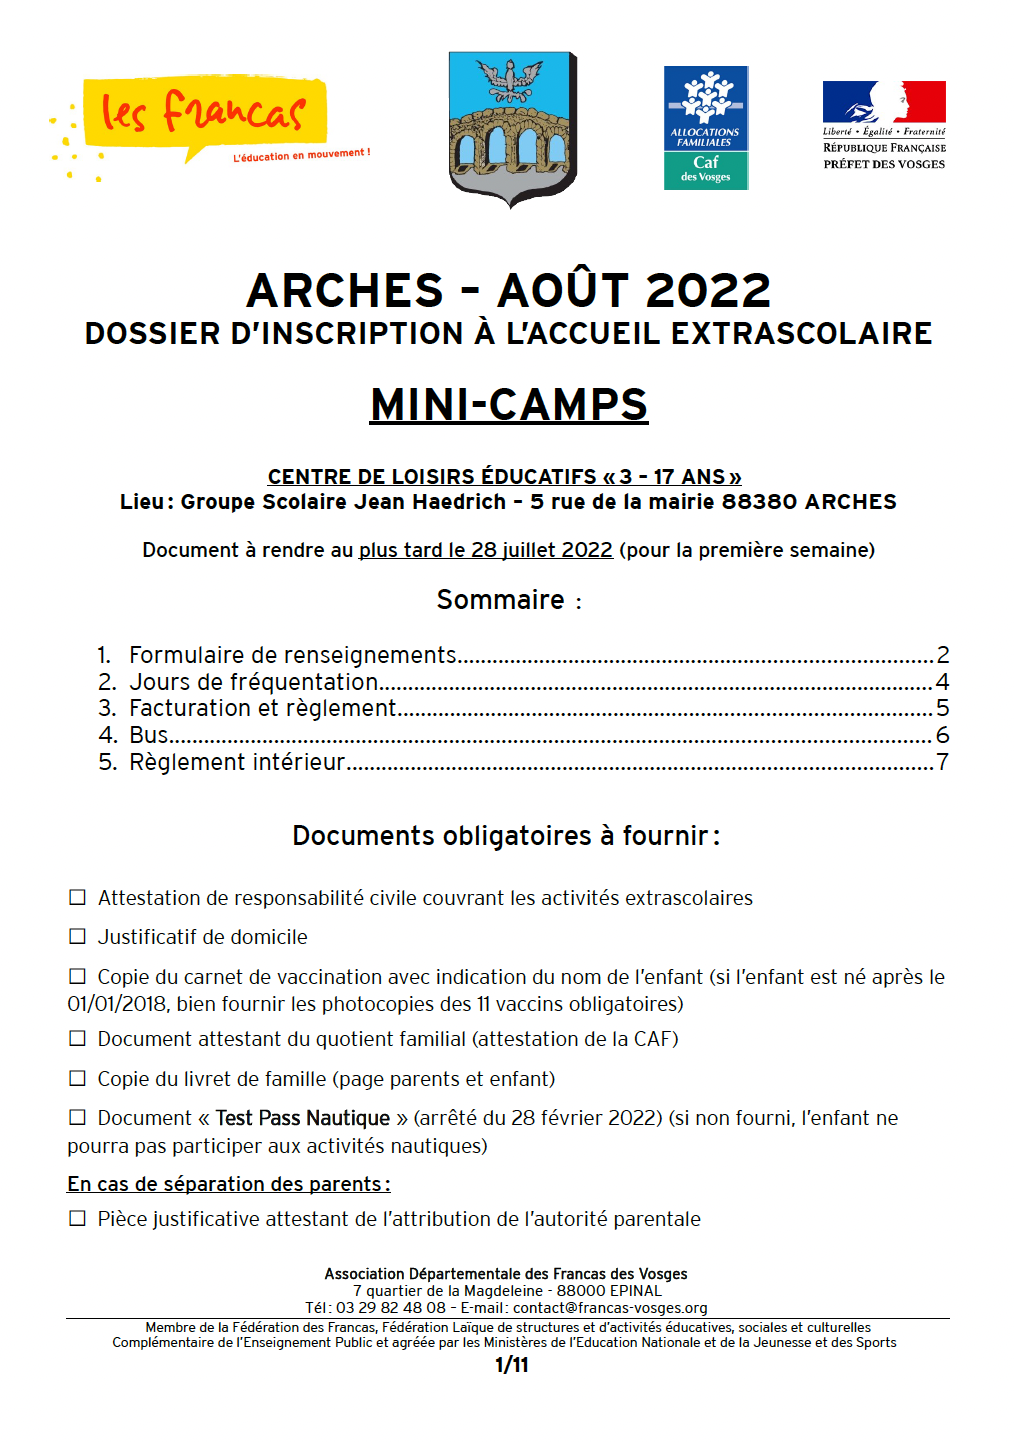 Dossier d’inscription Mini-Camps Arches août 2022